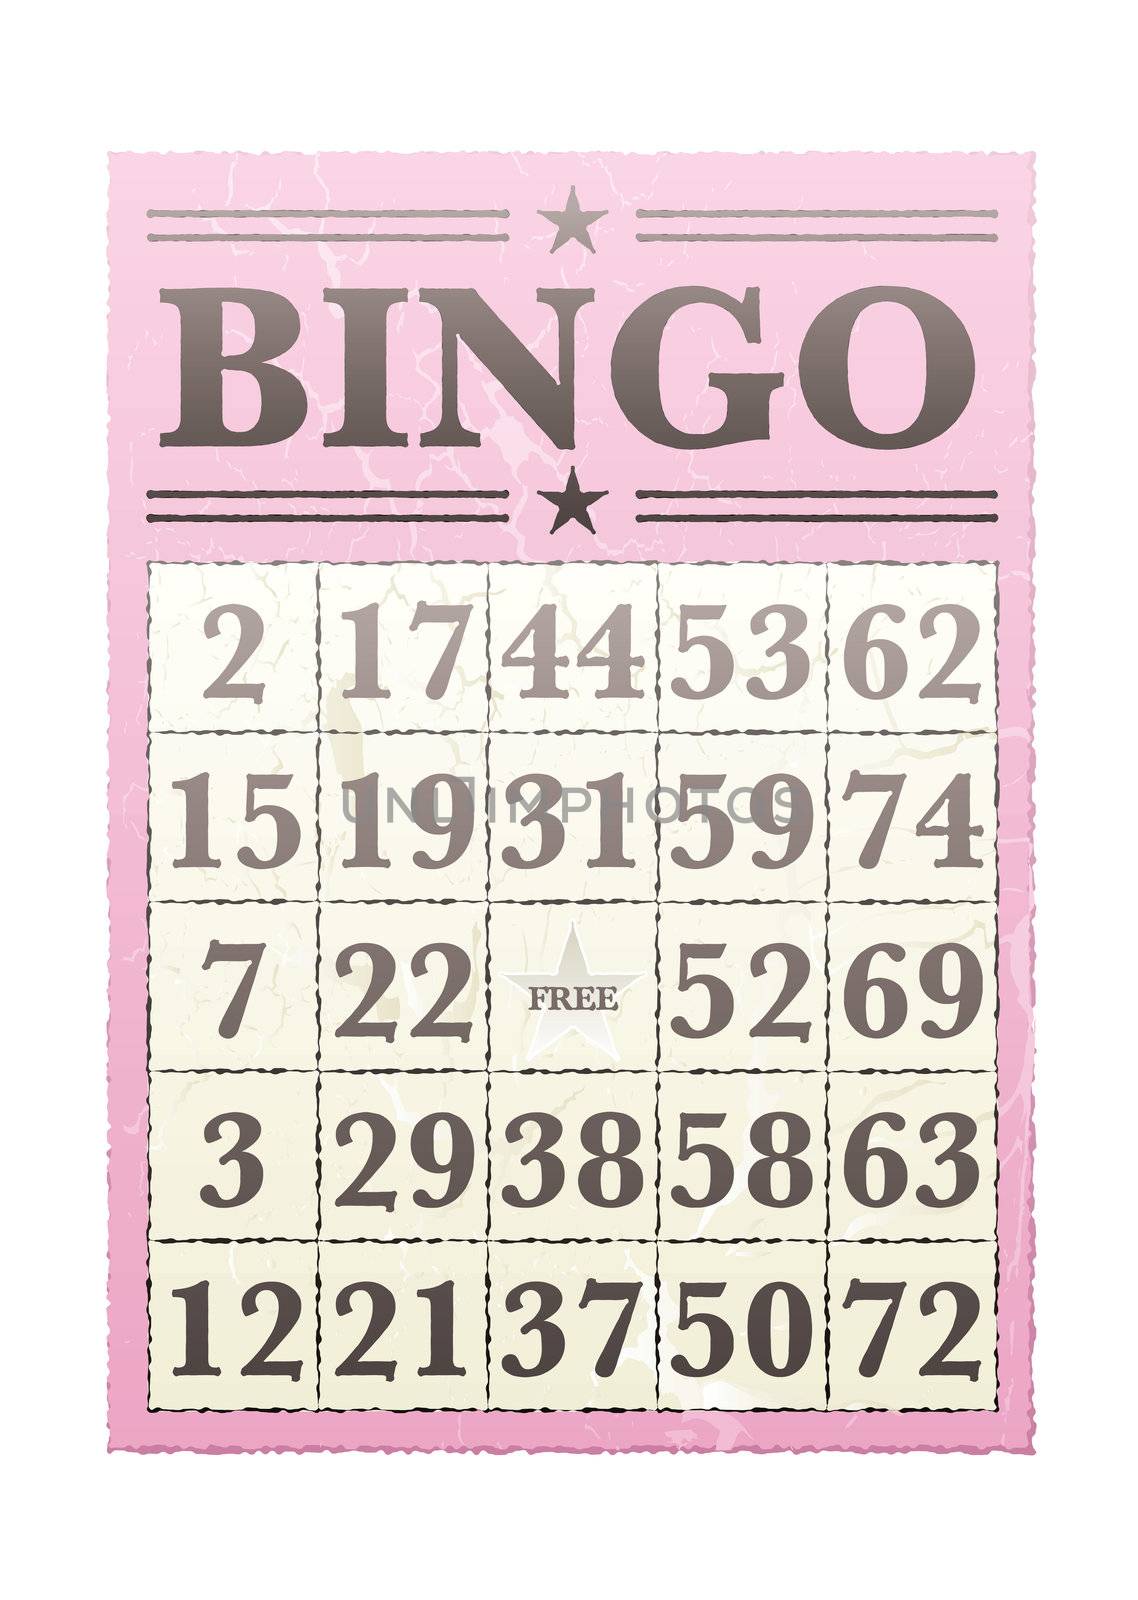 bingo card by nicemonkey